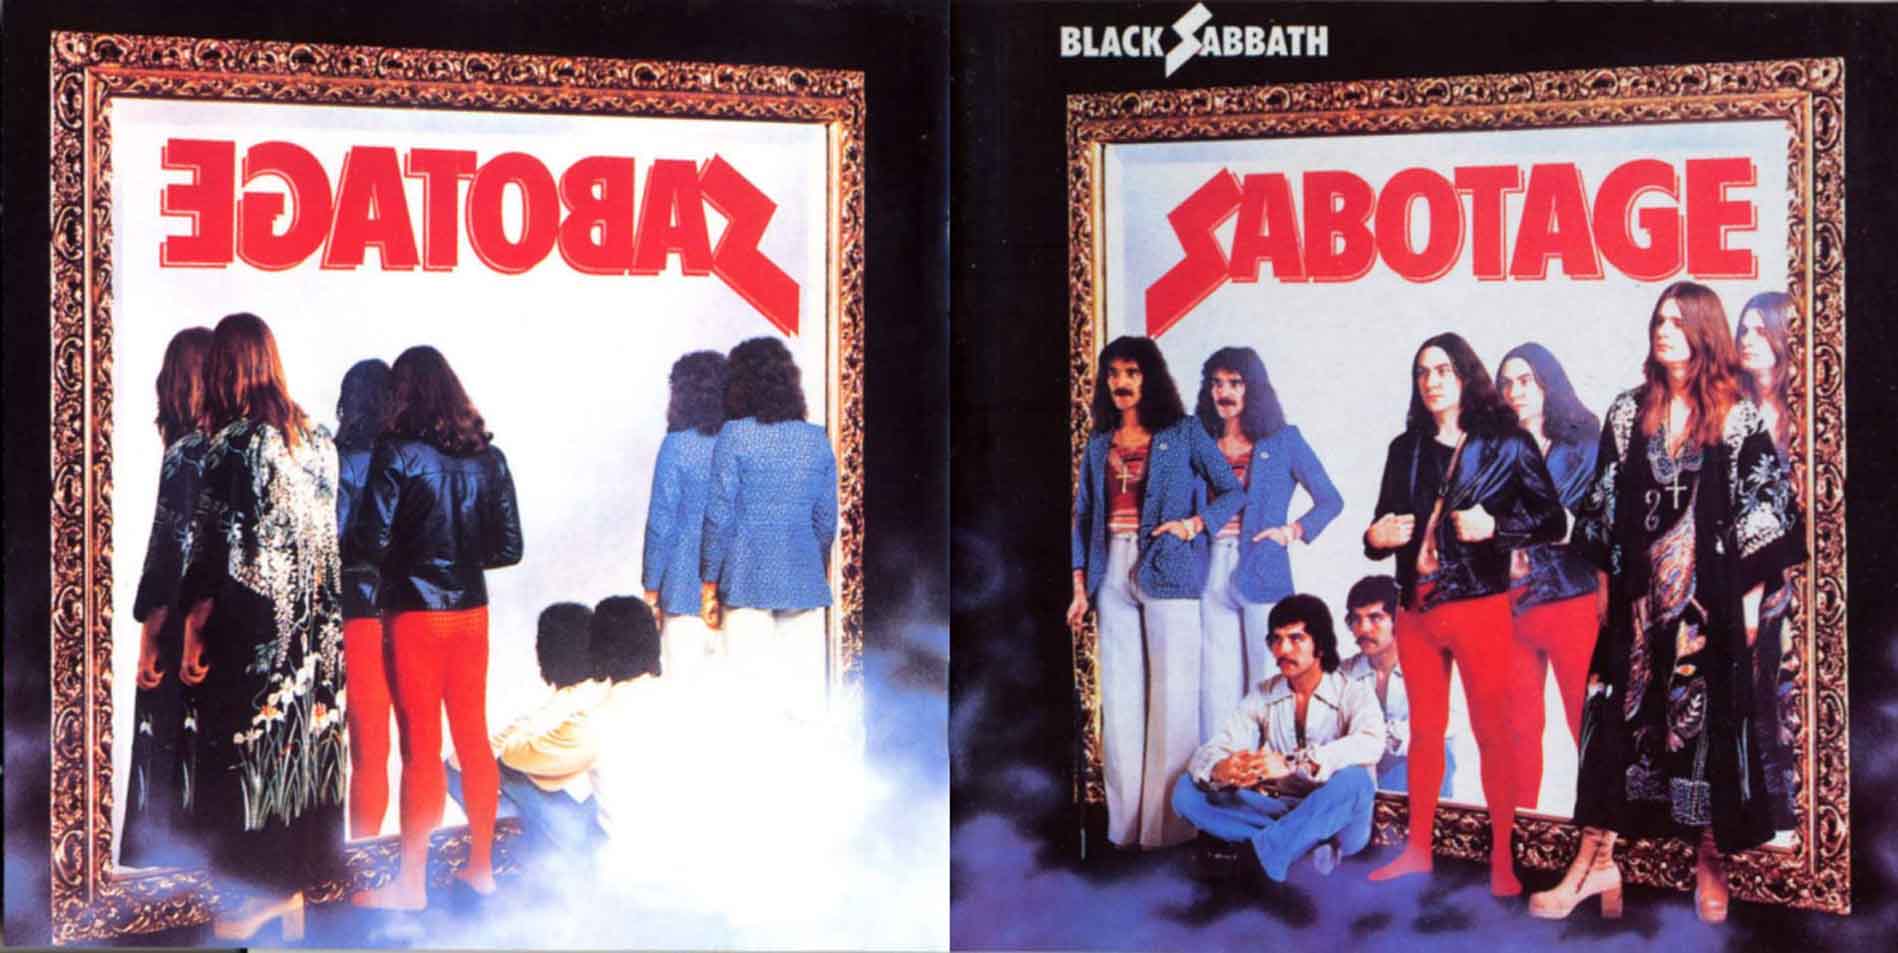 Sabbath Semana - Página 2 Black_sabbath_-_sabotage_f